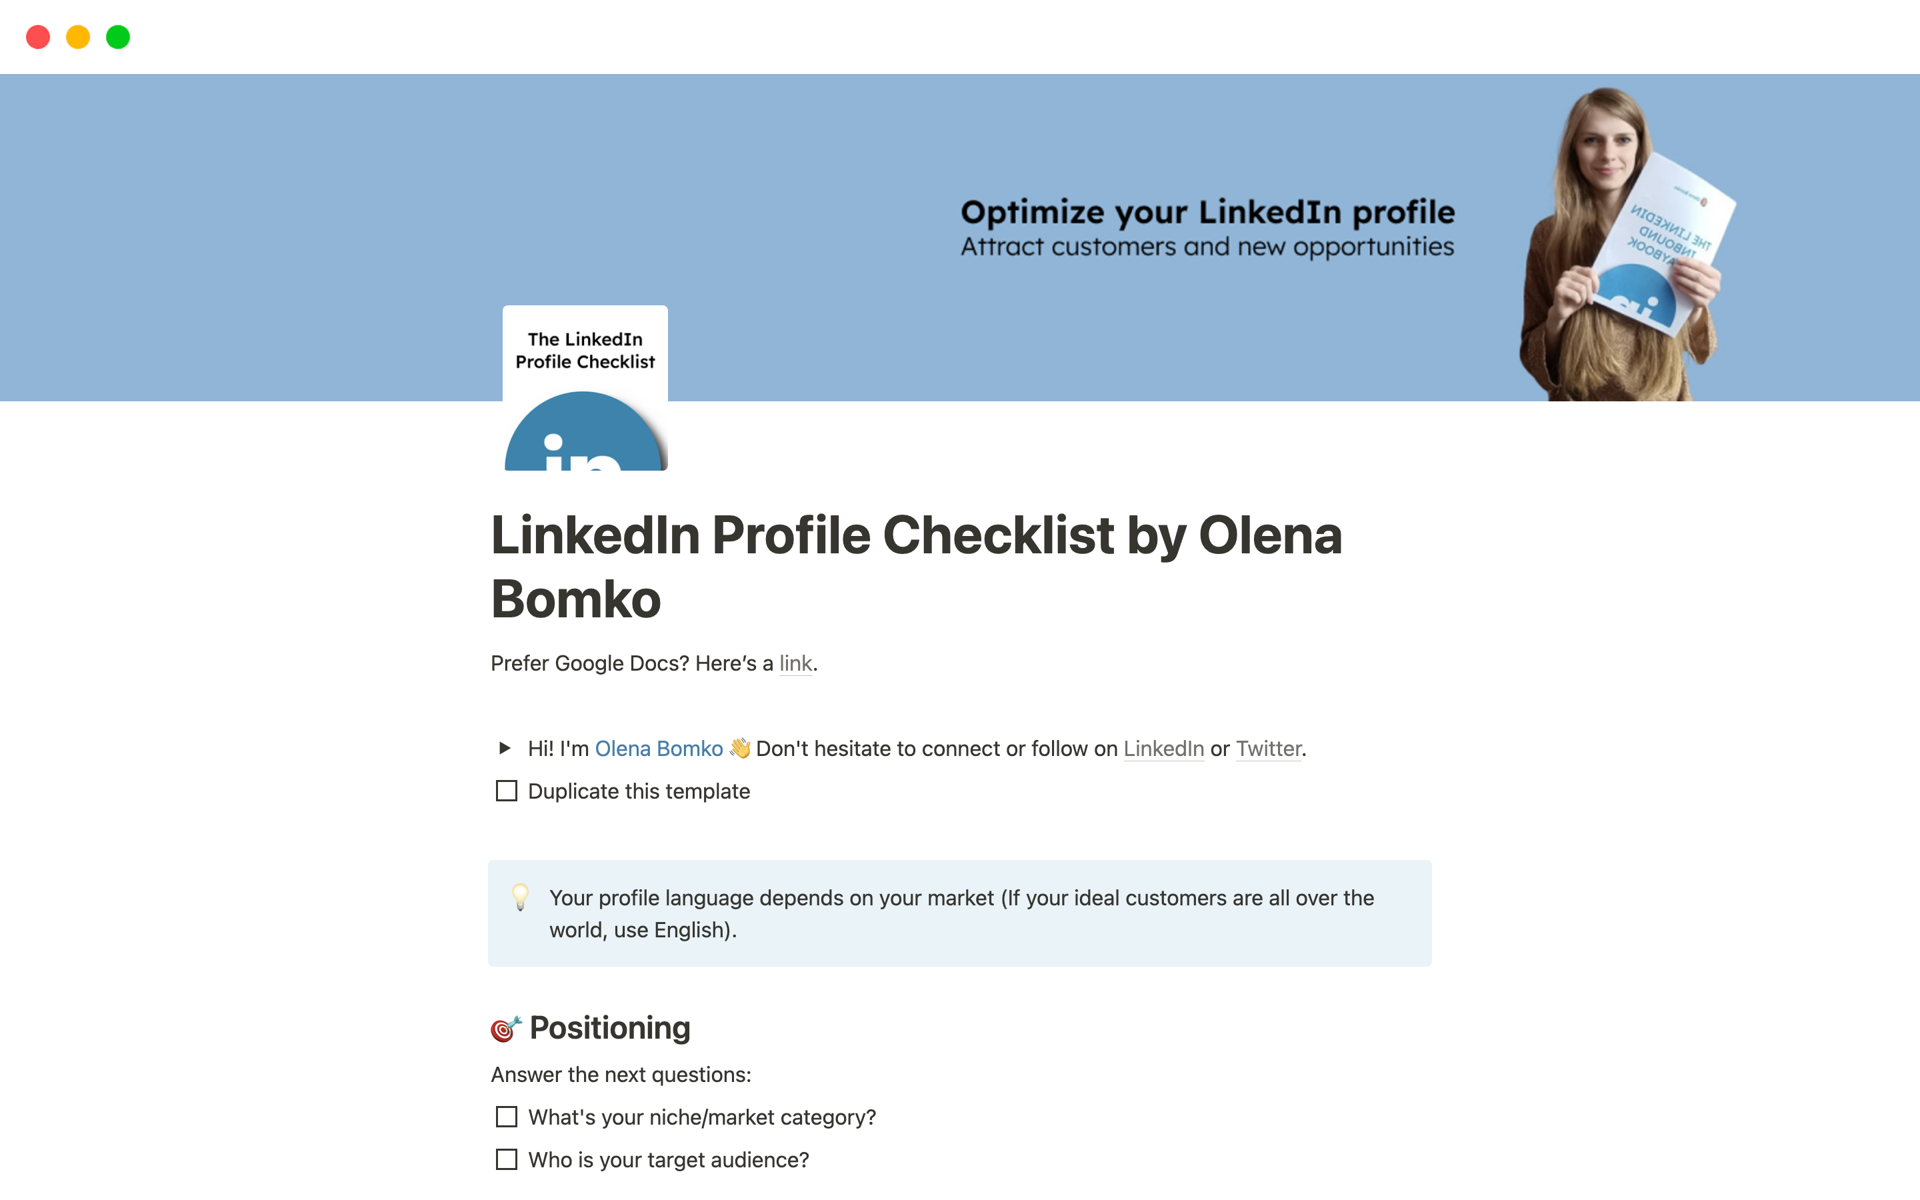 Uma prévia do modelo para LinkedIn Profile Checklist by Olena Bomko